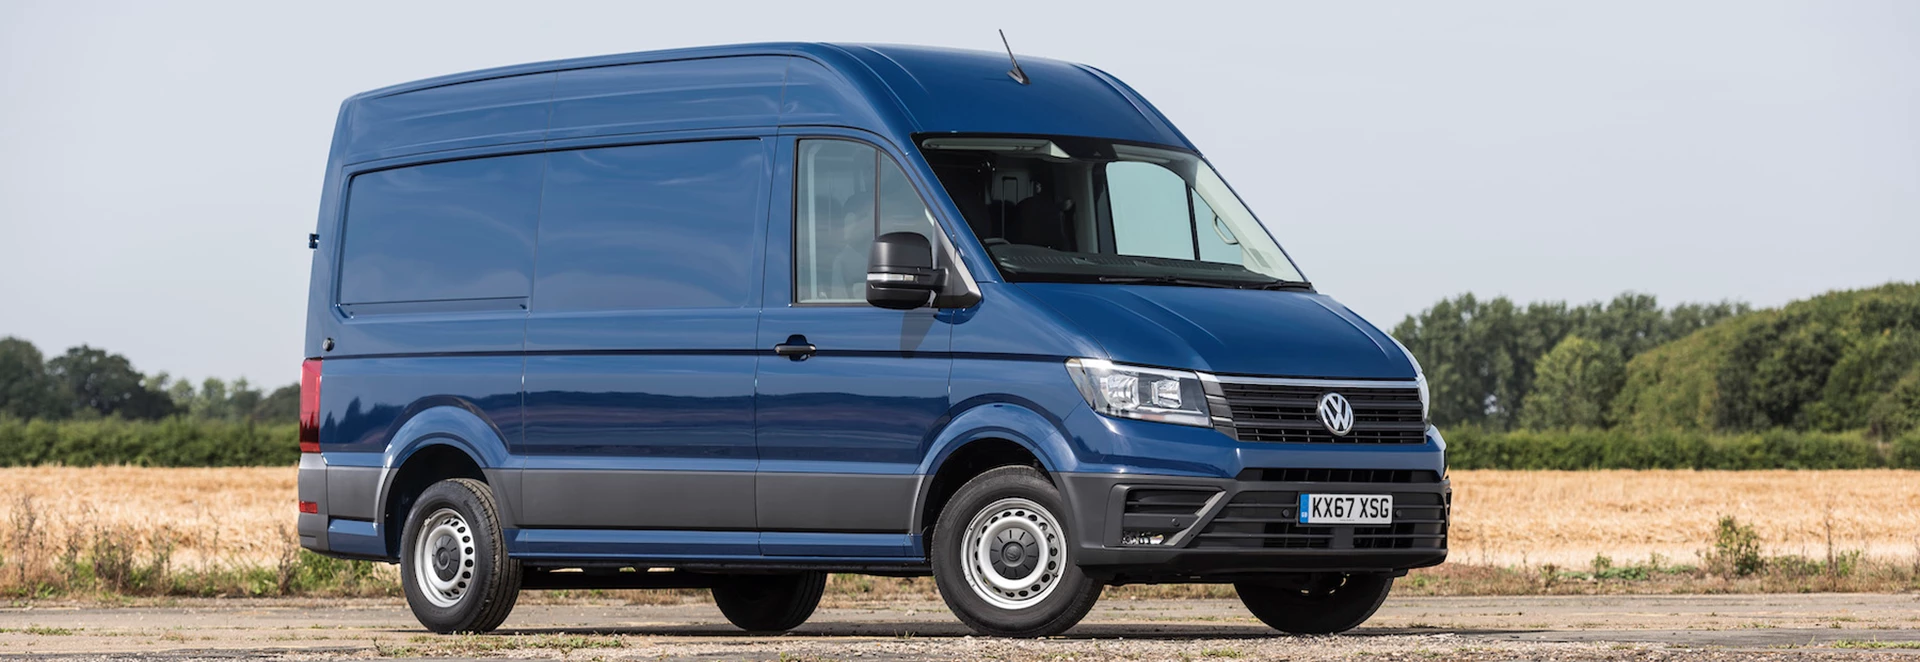 5 best large vans on sale in 2020 - Car Keys